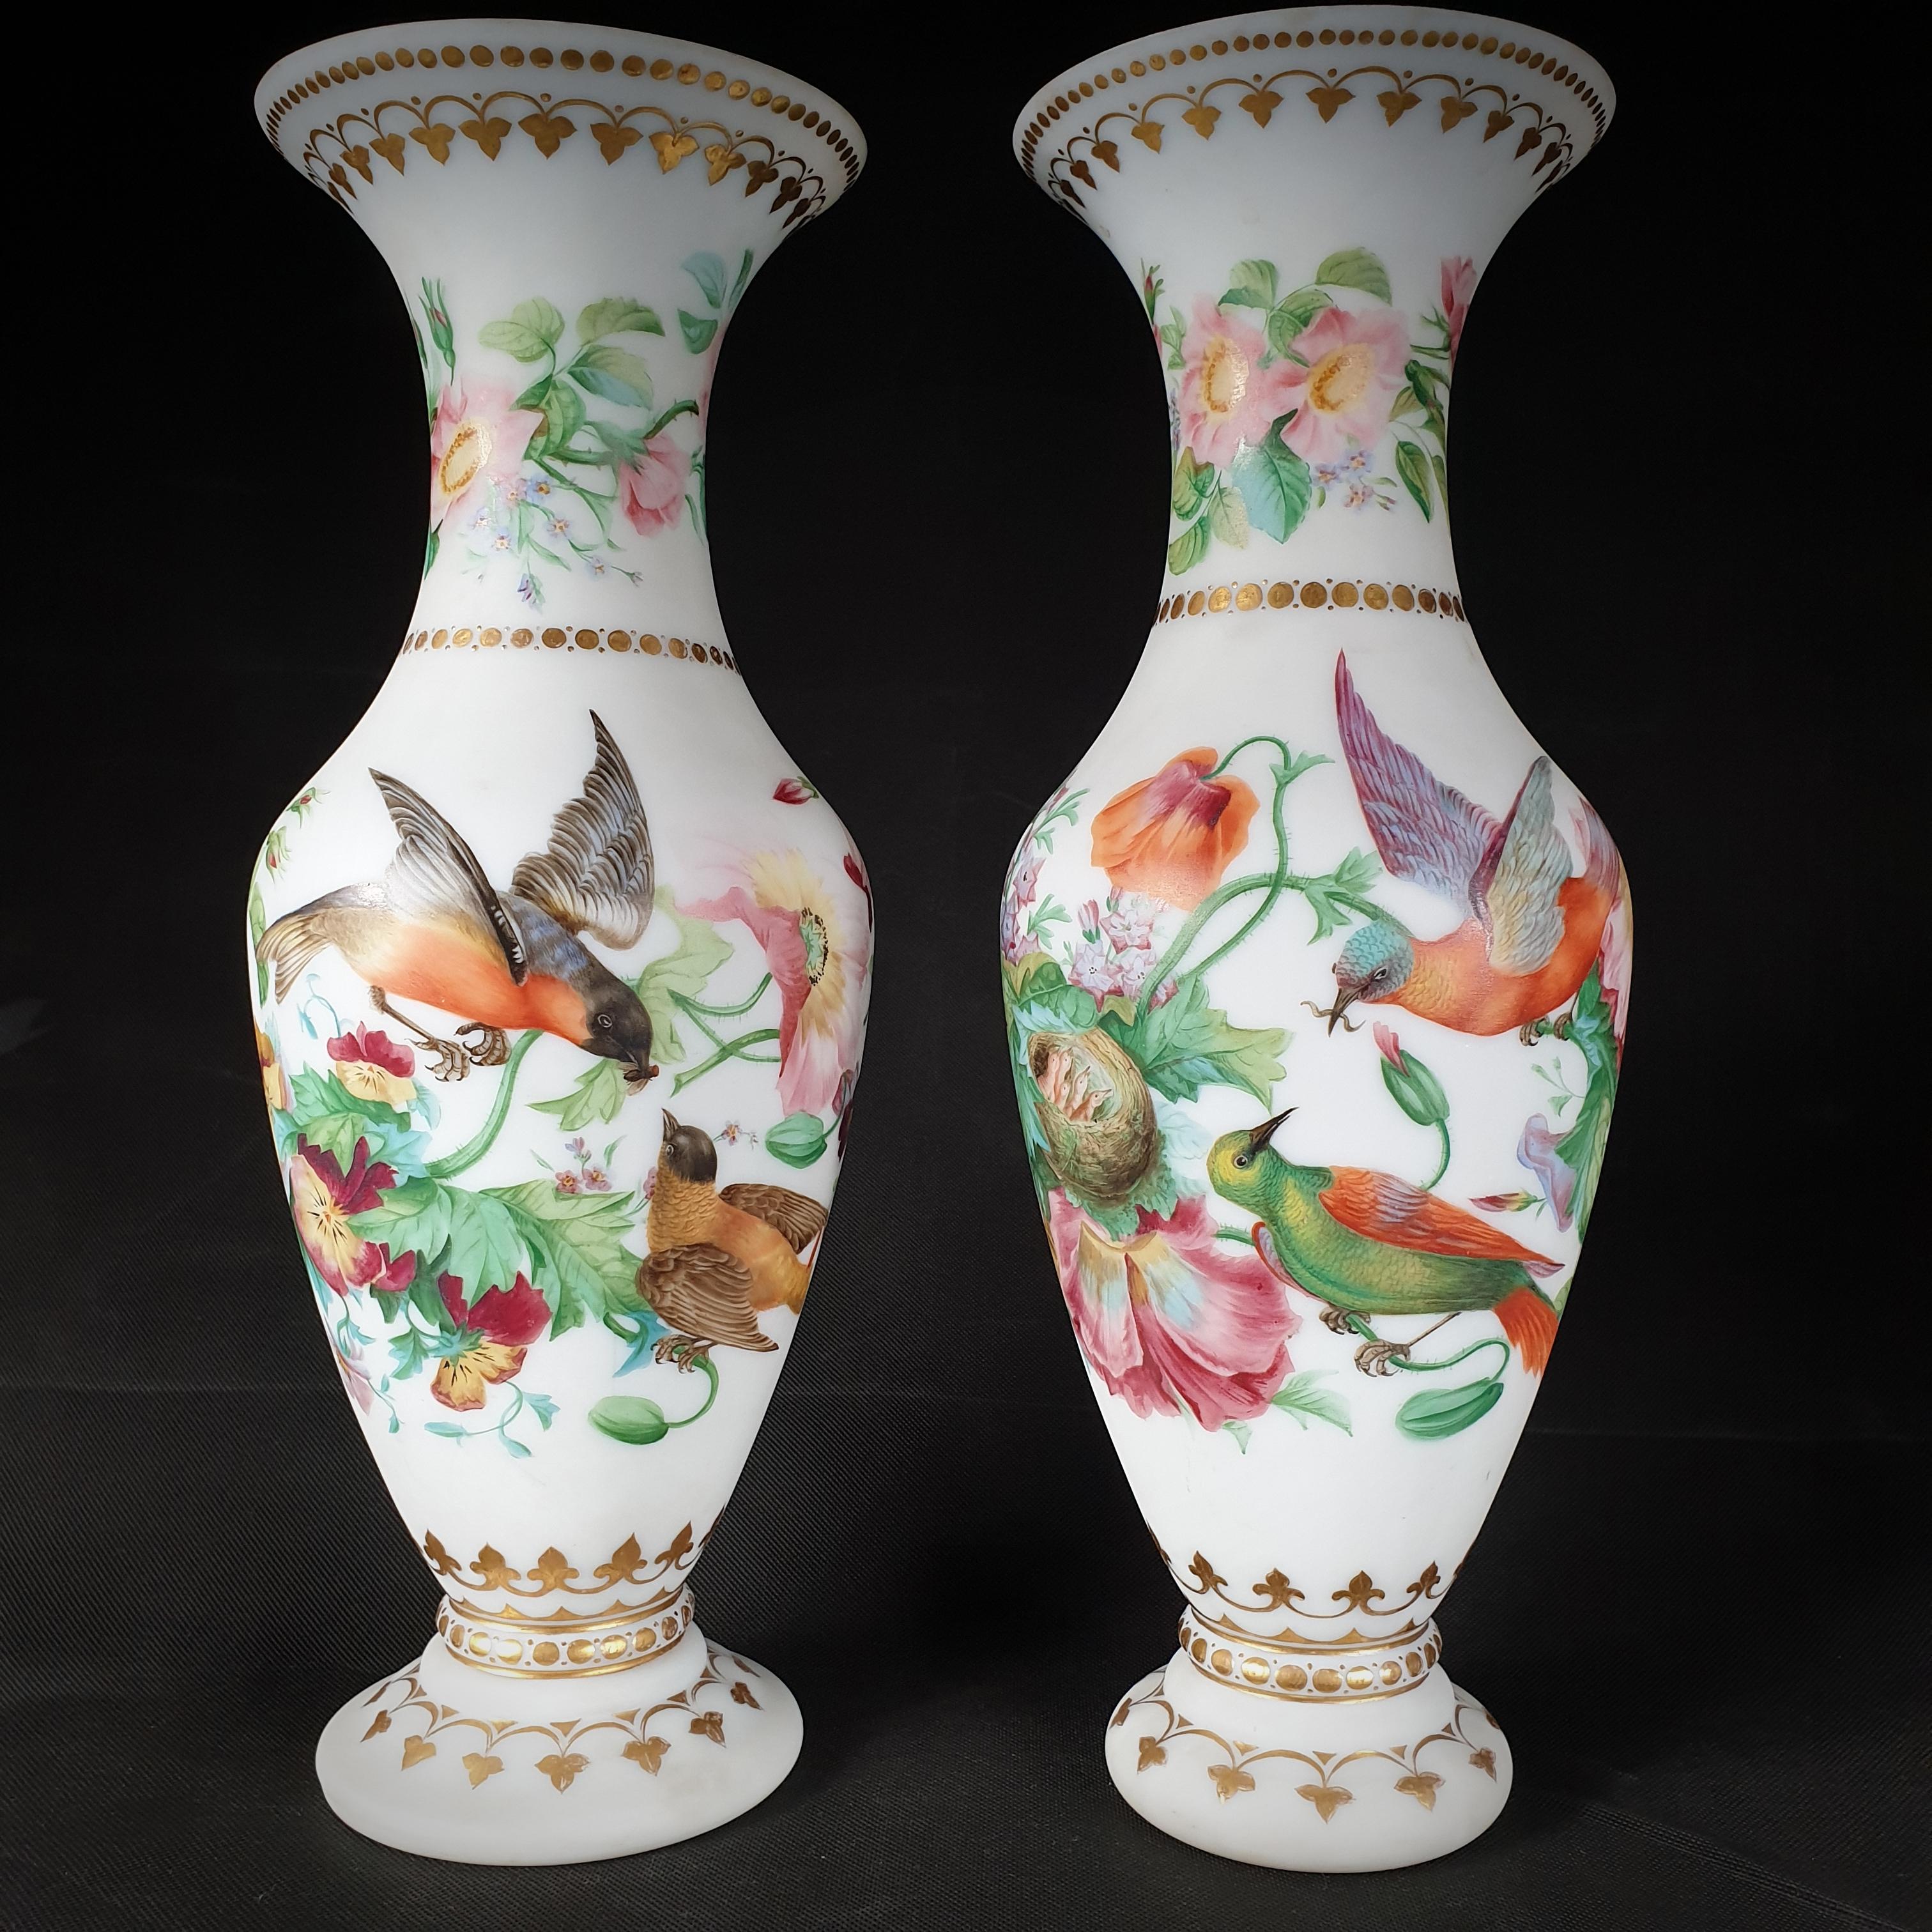 Paire de vases opalins en forme de trompette. De magnifiques motifs floraux peints à la main dans une variété de couleurs et de vibrants oiseaux prenant soin des poussins et gardant leur nid ornent ce couple de mariés. Les coins et les jantes ont